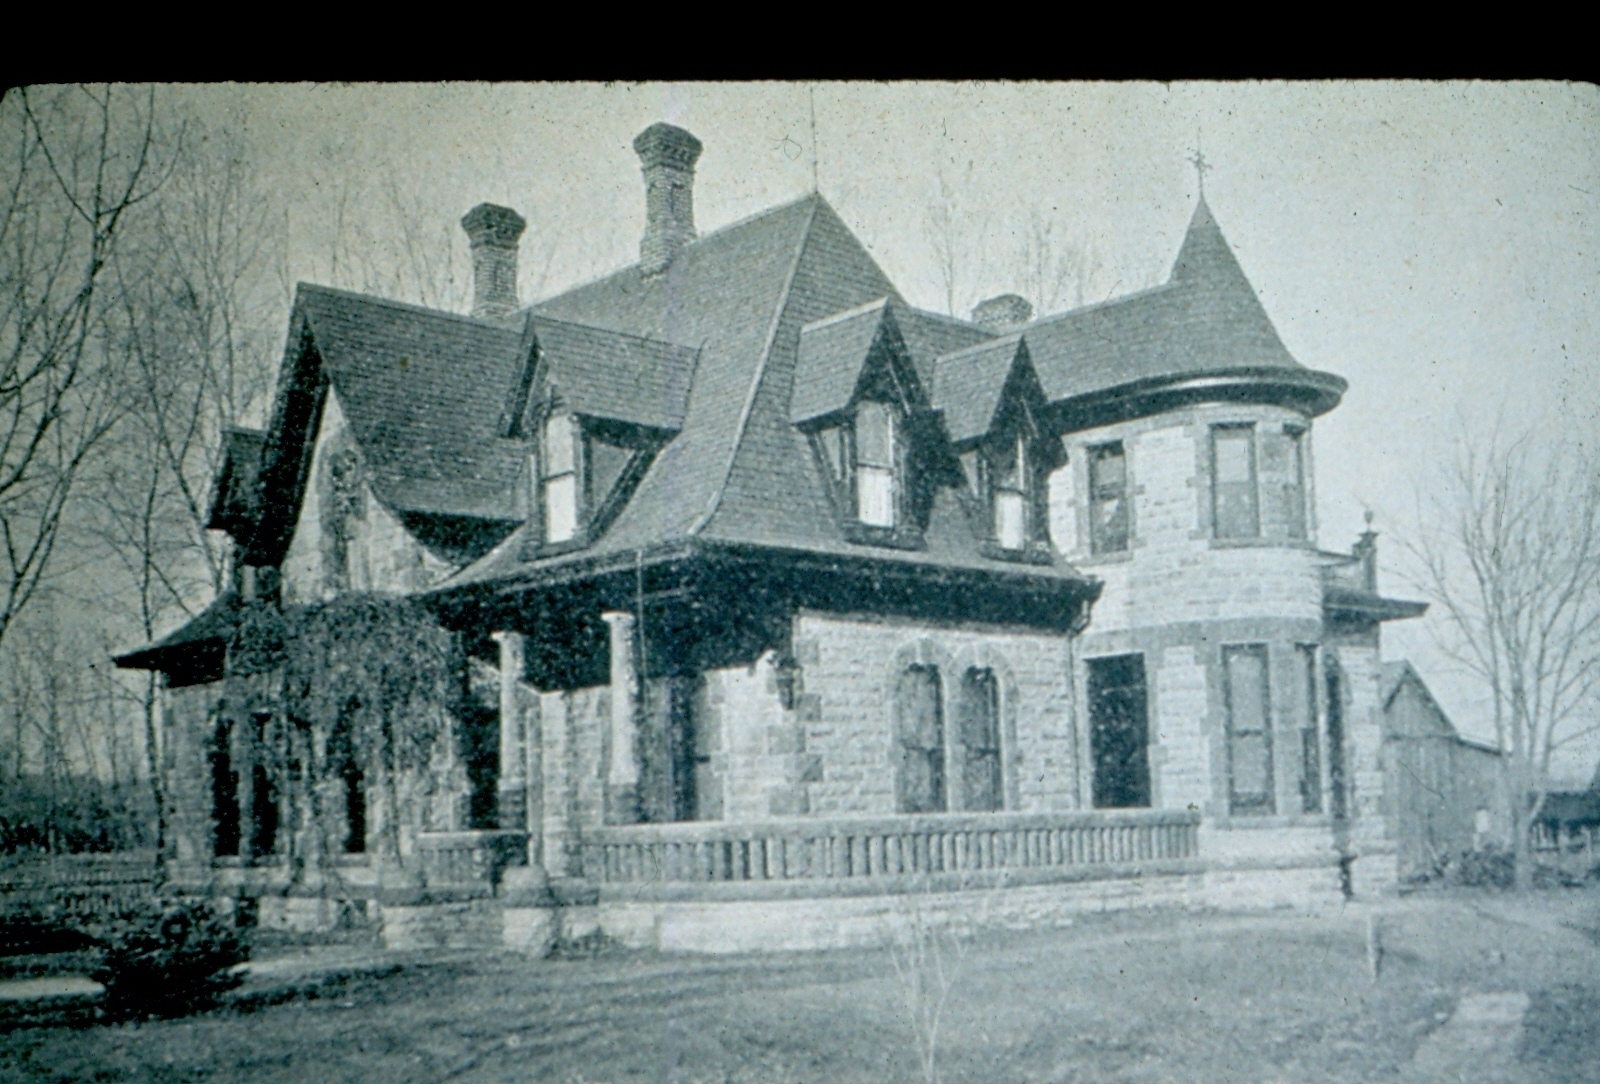  Avery House, ca. 1893 